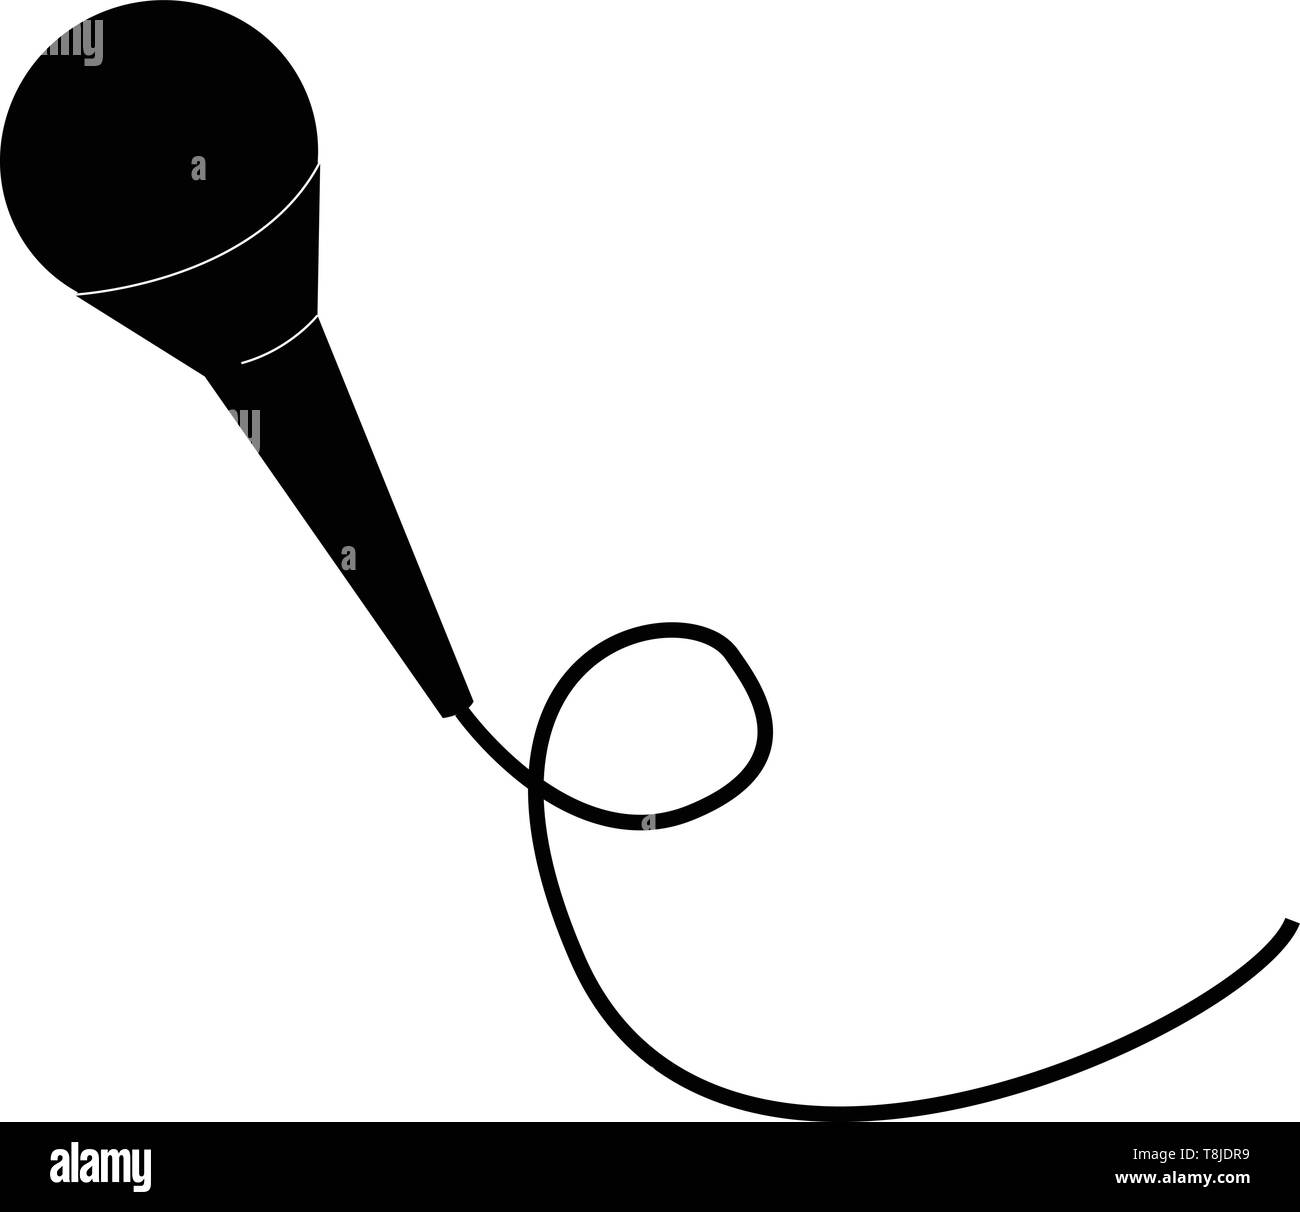 Un micrófono de metal de color negro con un largo alambre delgado conectado  a mejorar la cantidad y calidad de los sonidos, el vector, el color de  dibujo o ilustración Imagen Vector